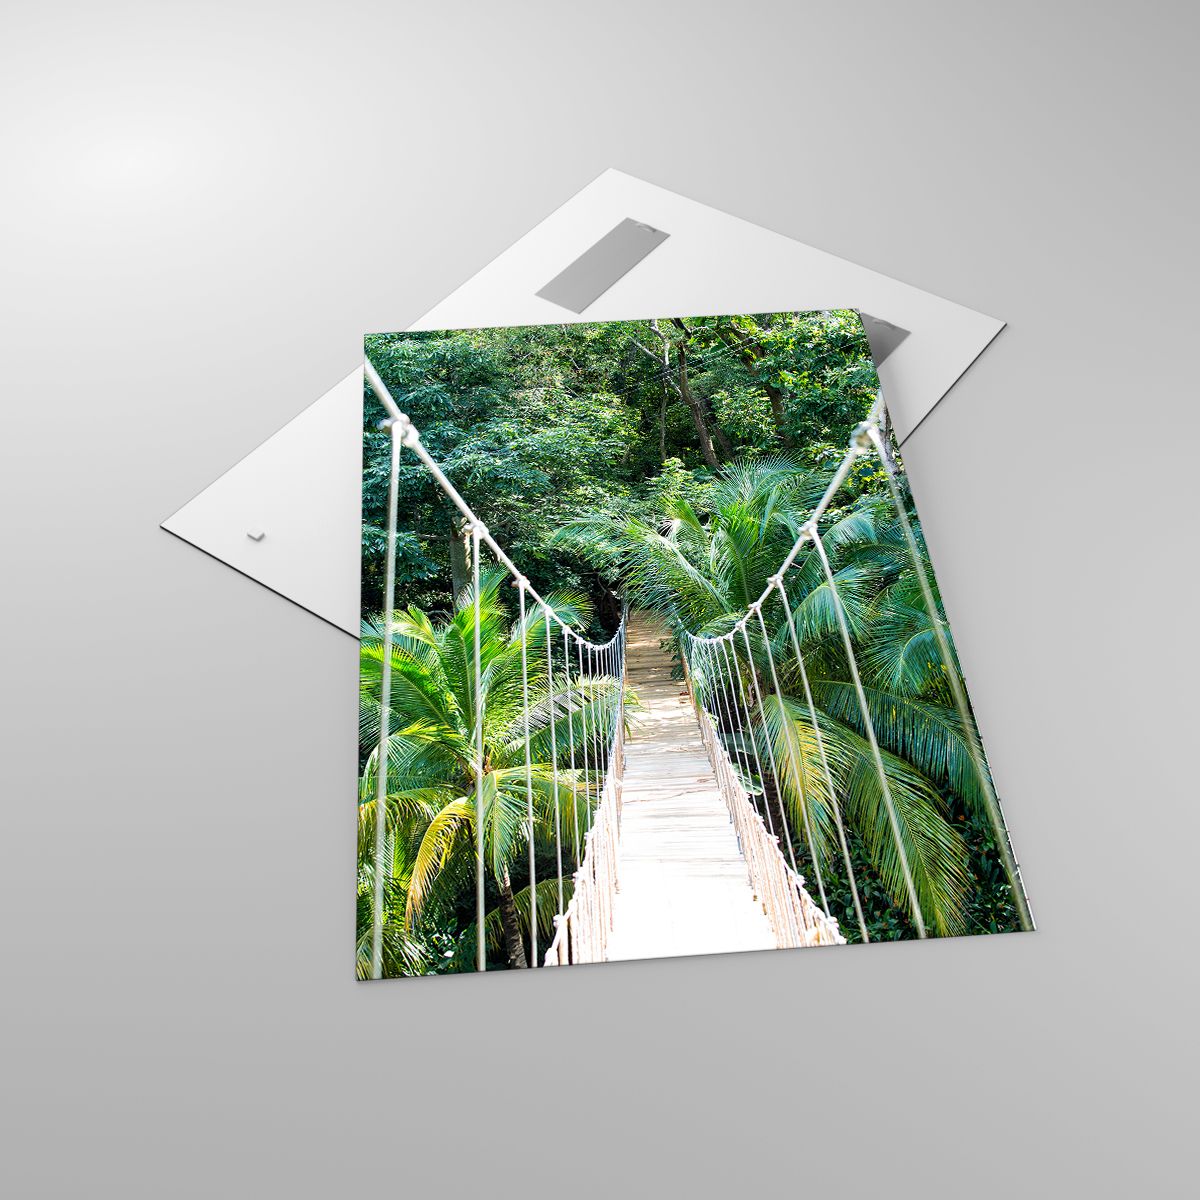 Glasbild Landschaft, Glasbild Urwald, Glasbild Honduras, Glasbild Hängende Brücke, Glasbild Natur